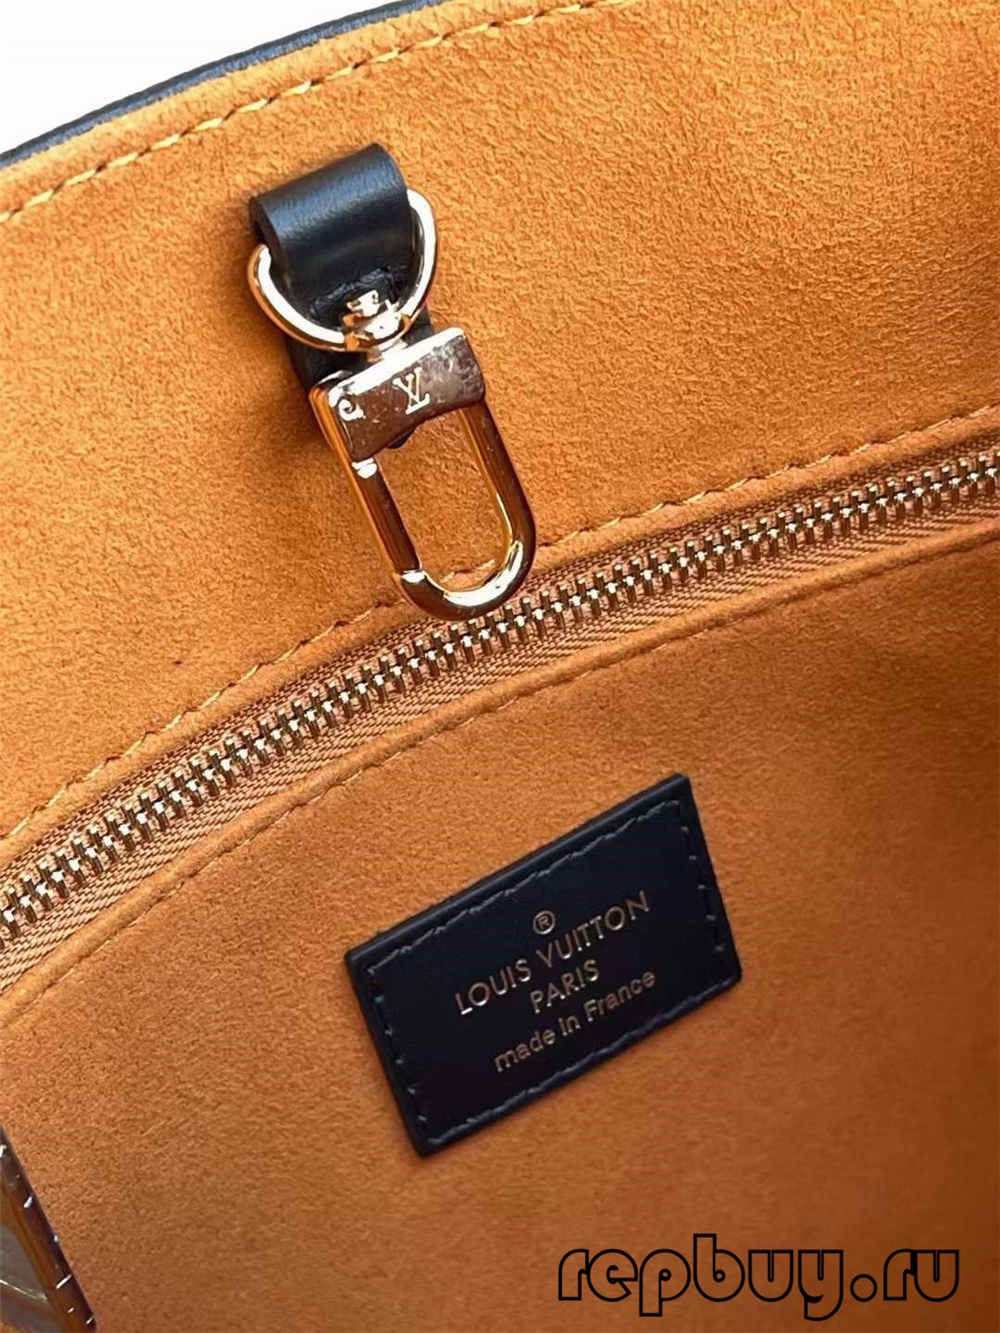 Louis Vuitton ONTHEGO M45653 Kalitate oneneko erreplika poltsa (2022 eguneratua)-Best Quality Fake Louis Vuitton Bag Online Store, Replica designer bag ru